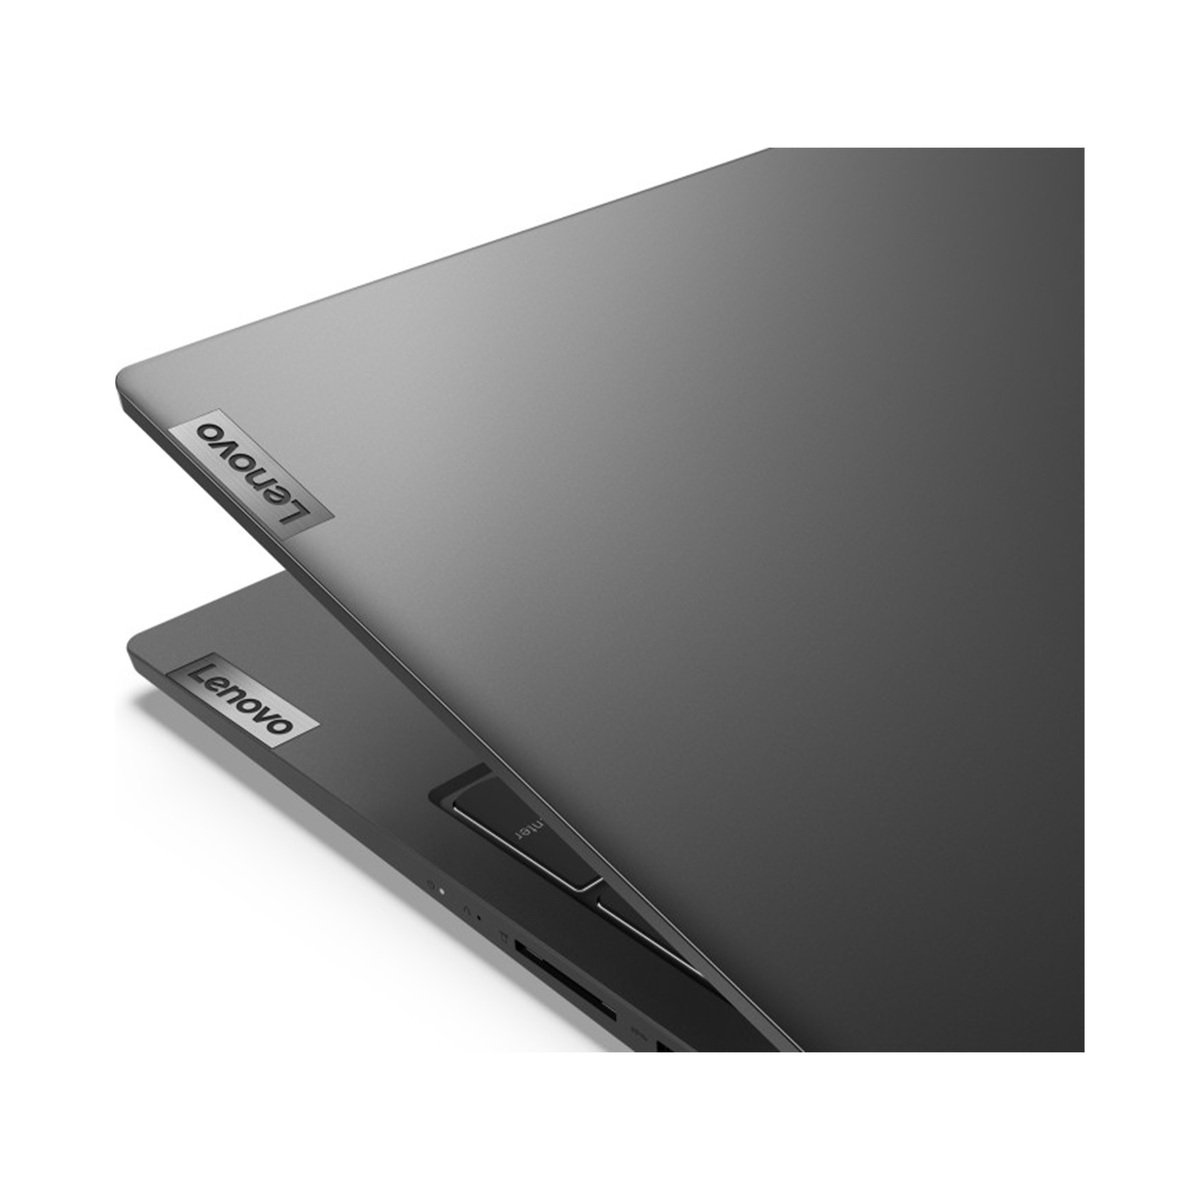 Lenovo IdeaPad 5 15ITL05 82FG00SNAD, 15.6 inches, 11th Gen Intel Core i5 1135G7, 8GB, 512GB SSD, NVIDIA GeForce MX450 2GB, Graphite Gray